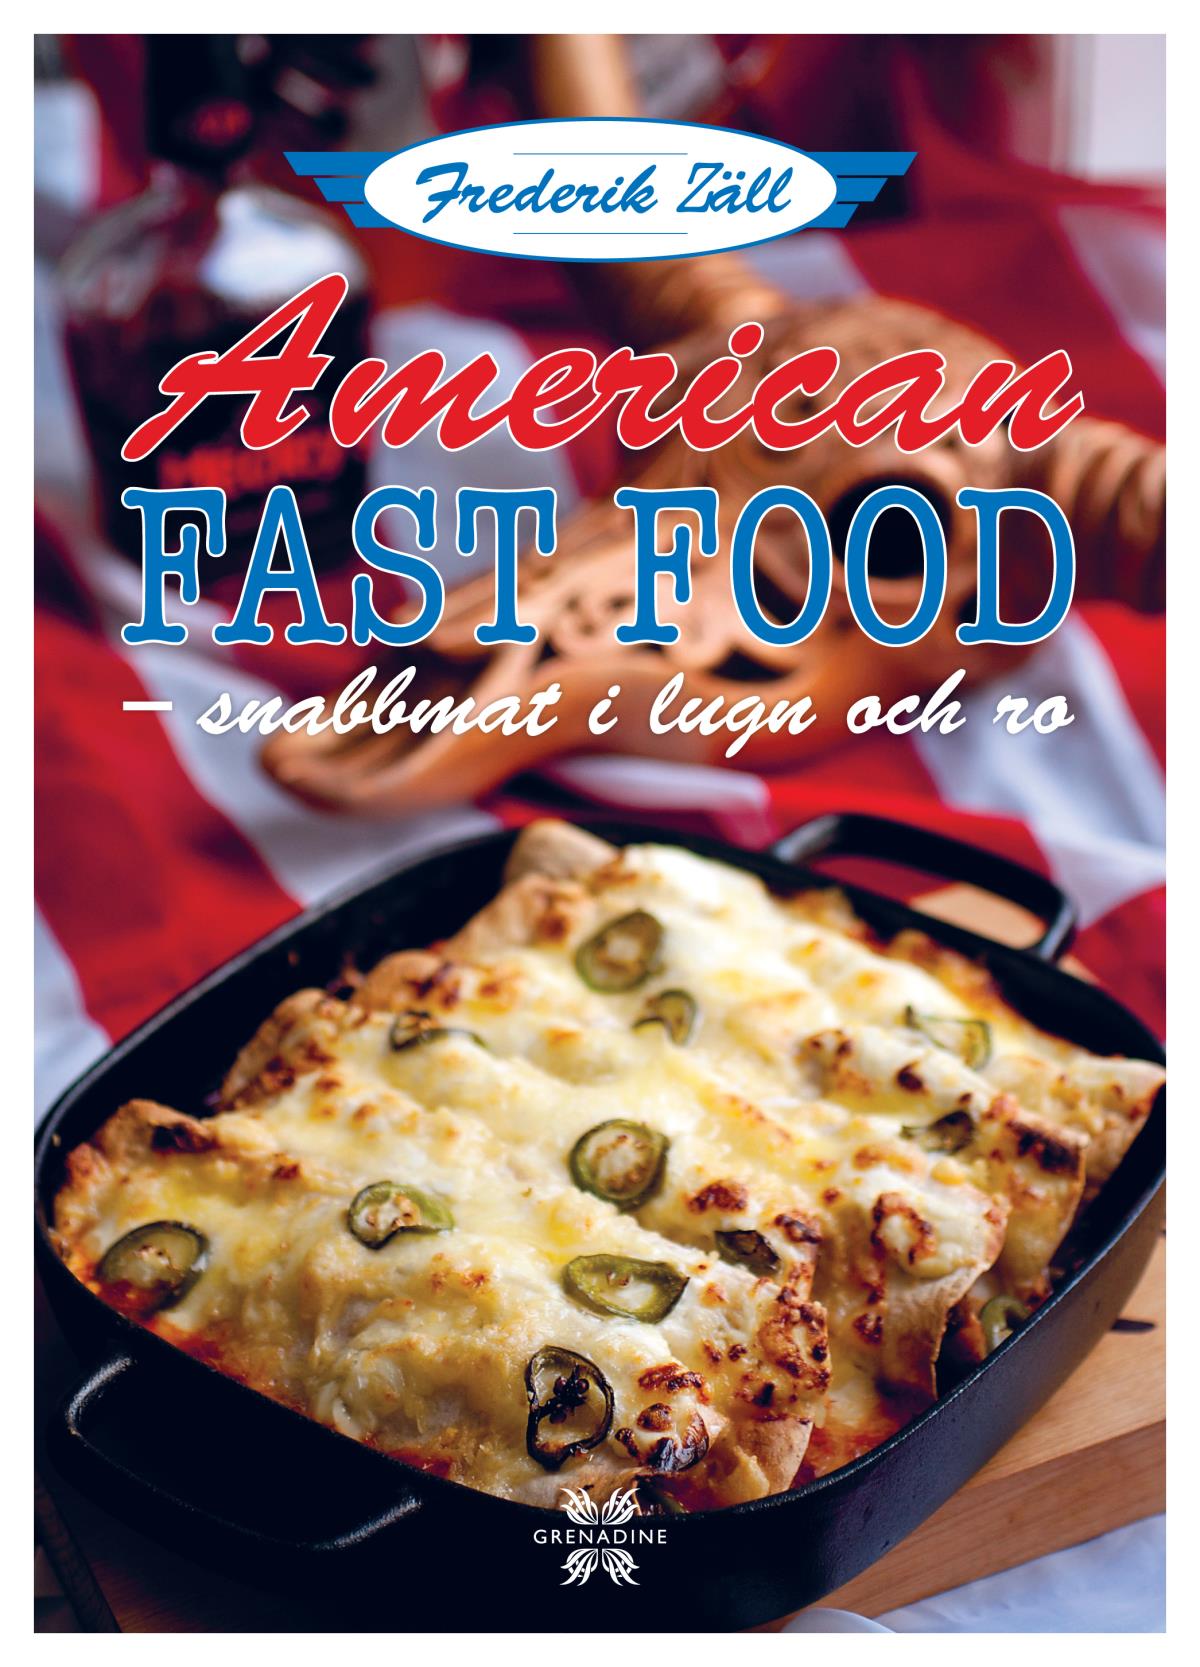 American Fast Food - Snabbmat I Lugn Och Ro